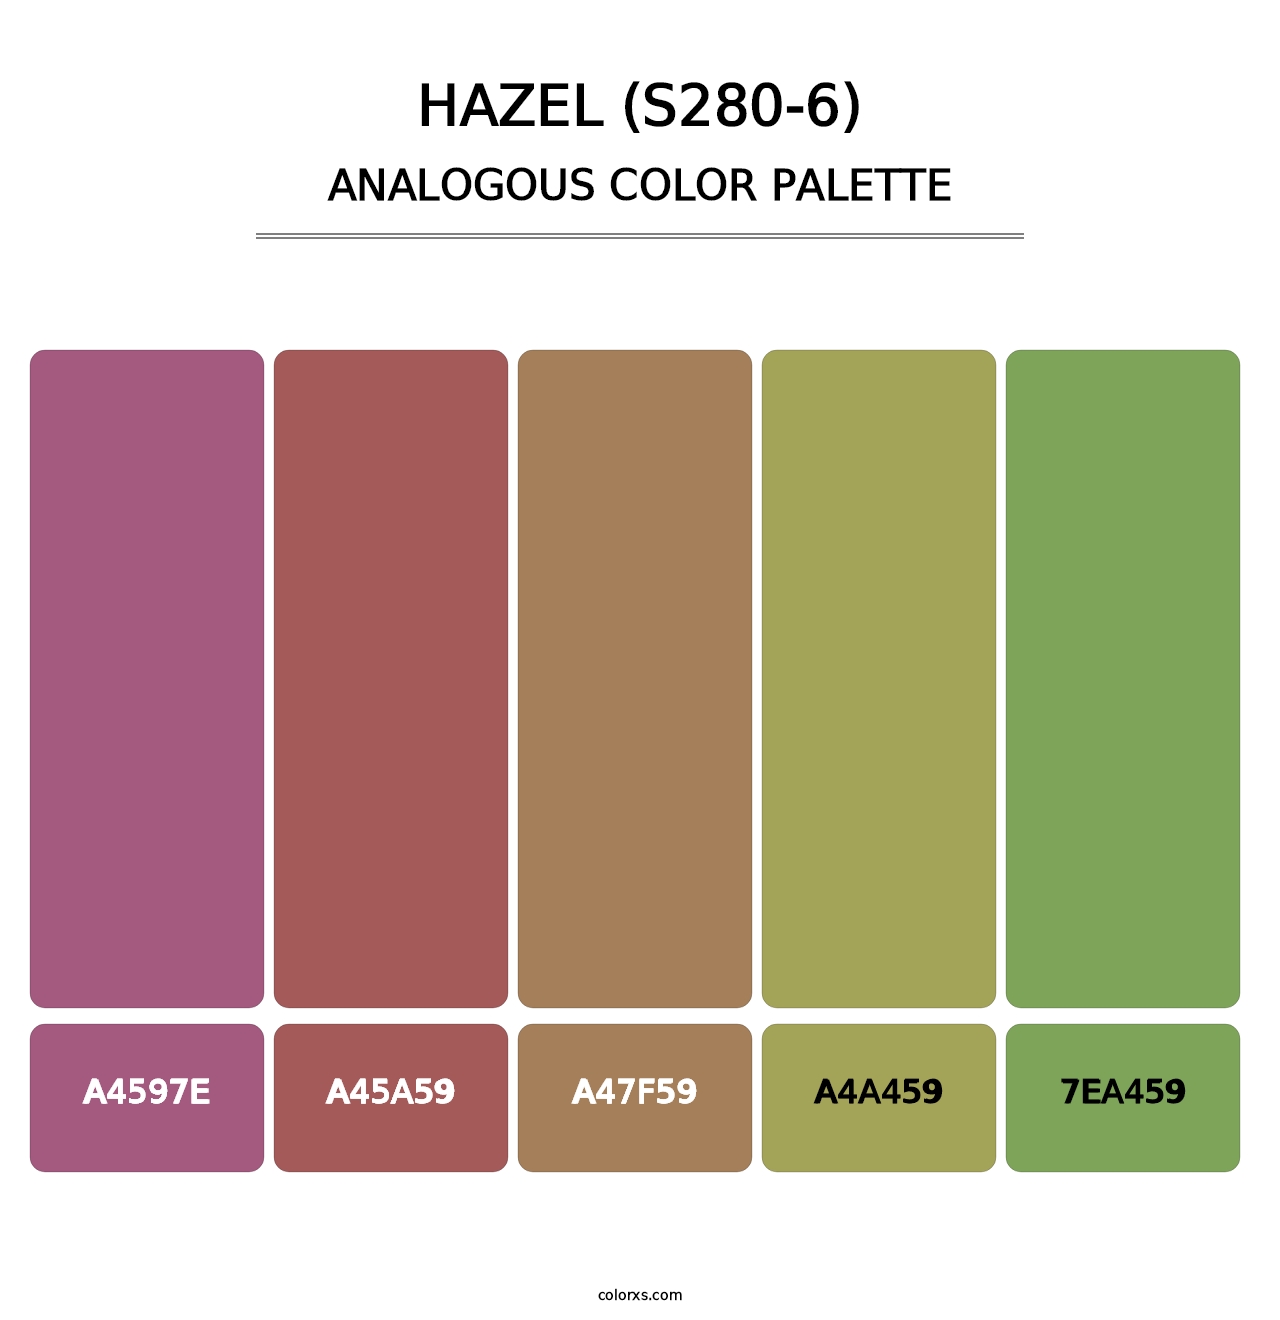 Hazel (S280-6) - Analogous Color Palette